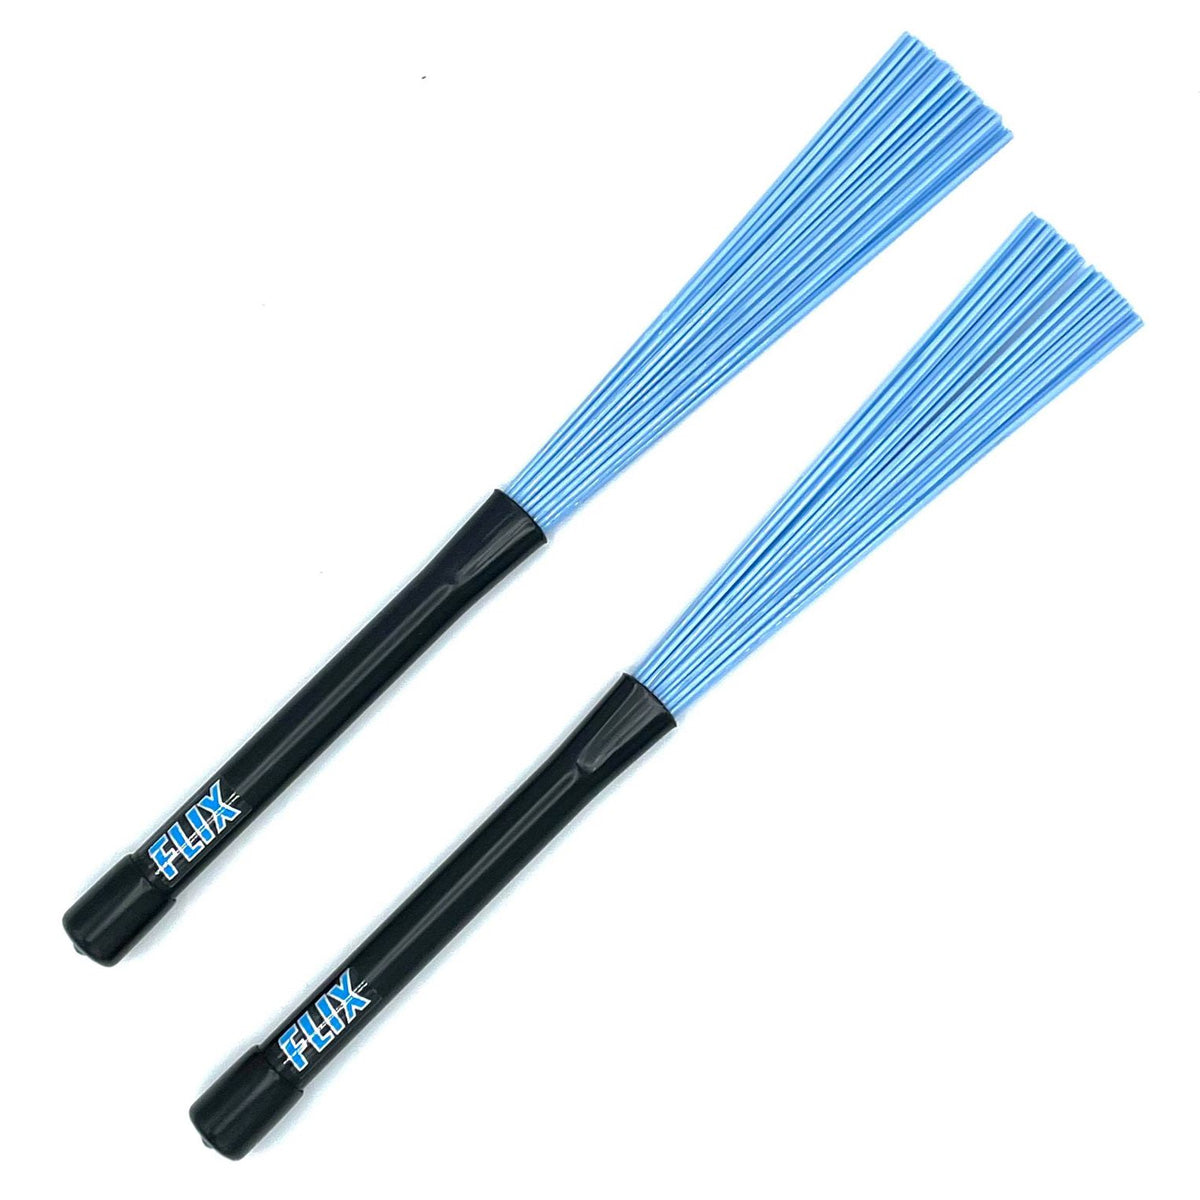 Flix Rock Brushes - Light Blue